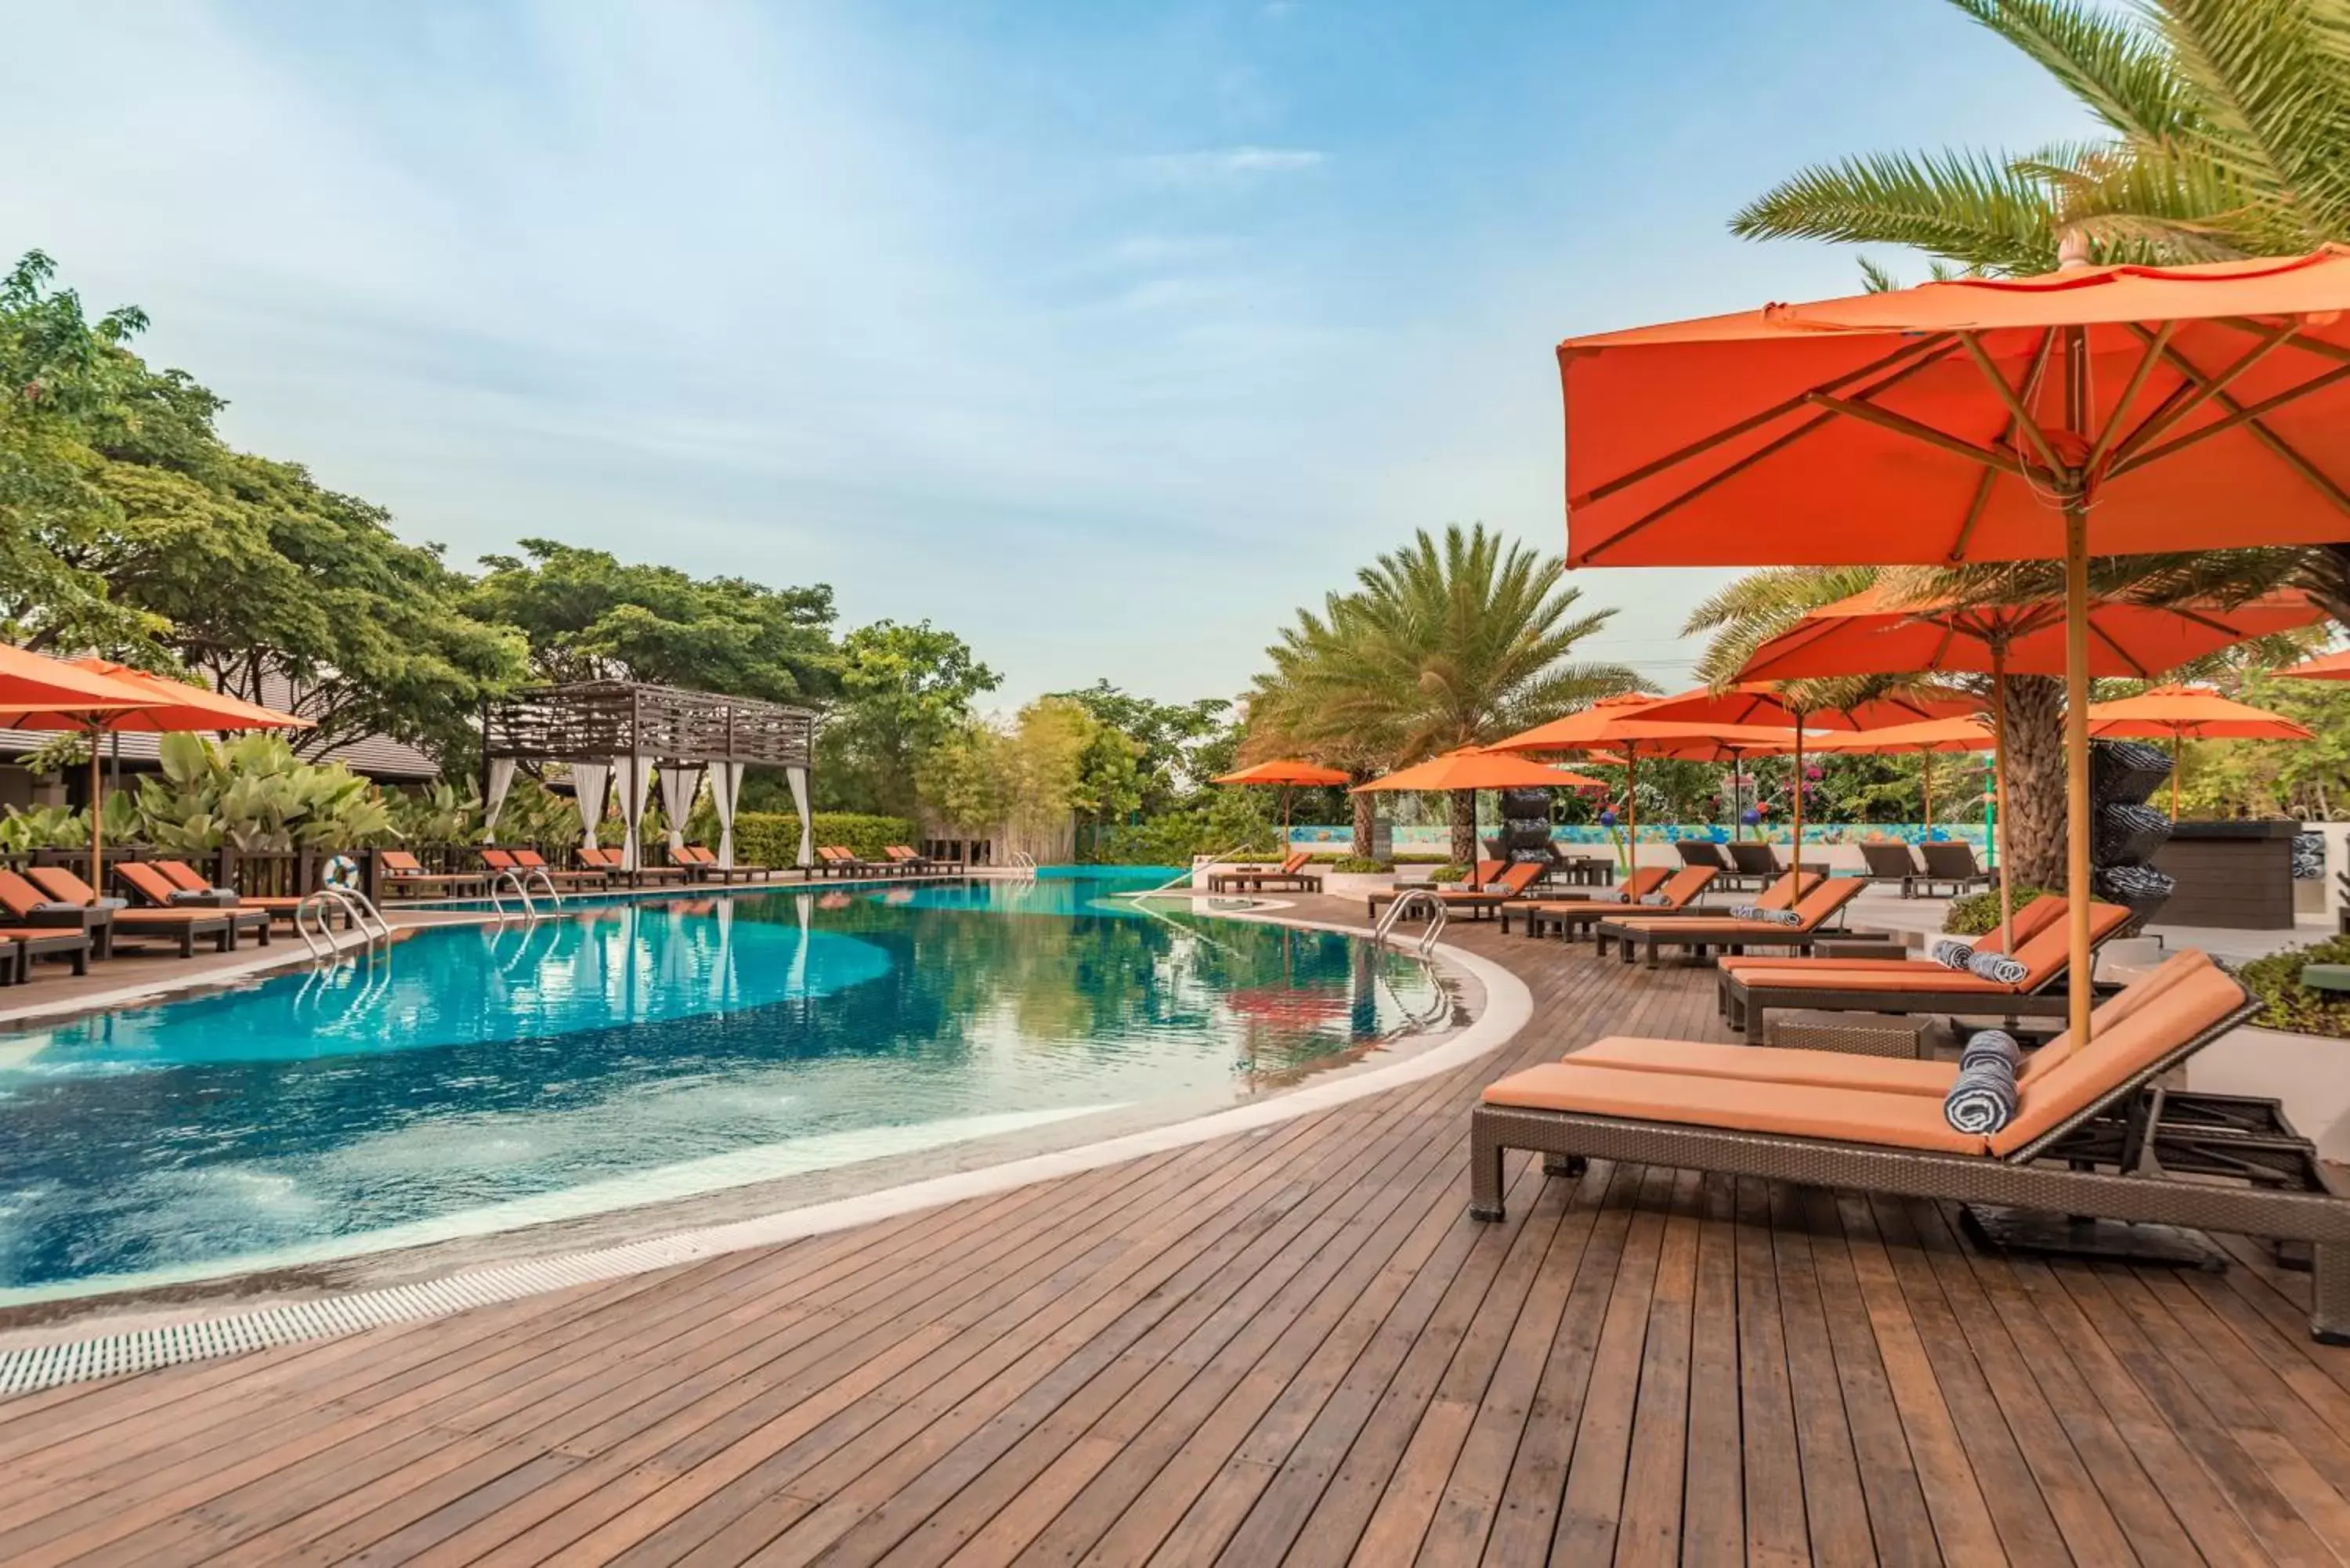 Swimming Pool in Crimson Resort and Spa - Mactan Island, Cebu